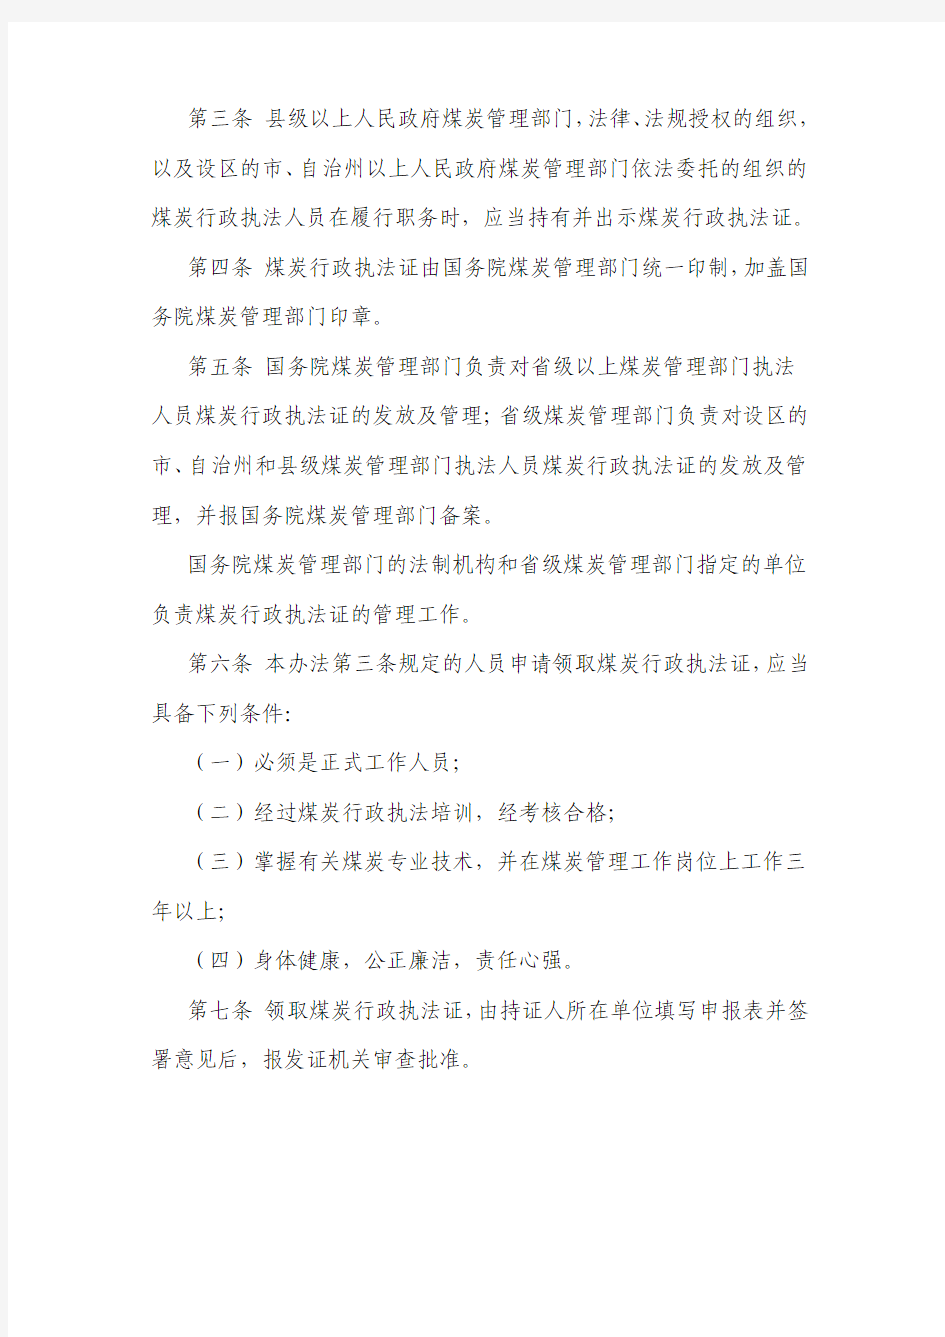 中华人民共和国煤炭行政执法证管理办法(煤炭工业部令第2号)